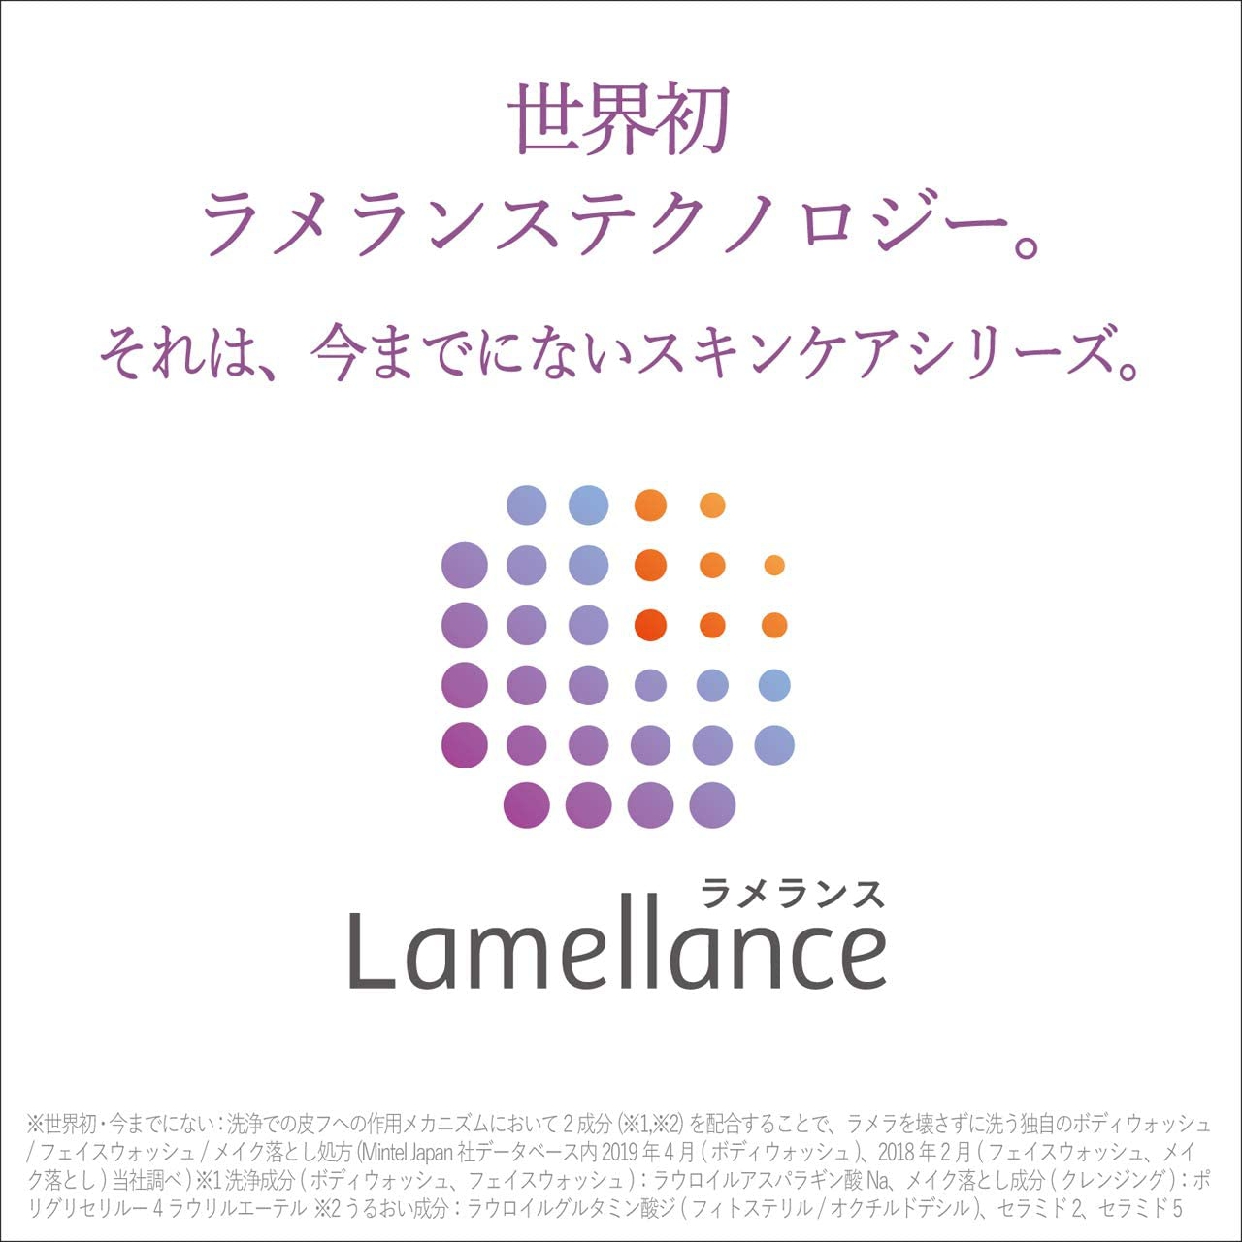 Lamellance(ラメランス) プレミアム ボディ ウォッシュの商品画像3 